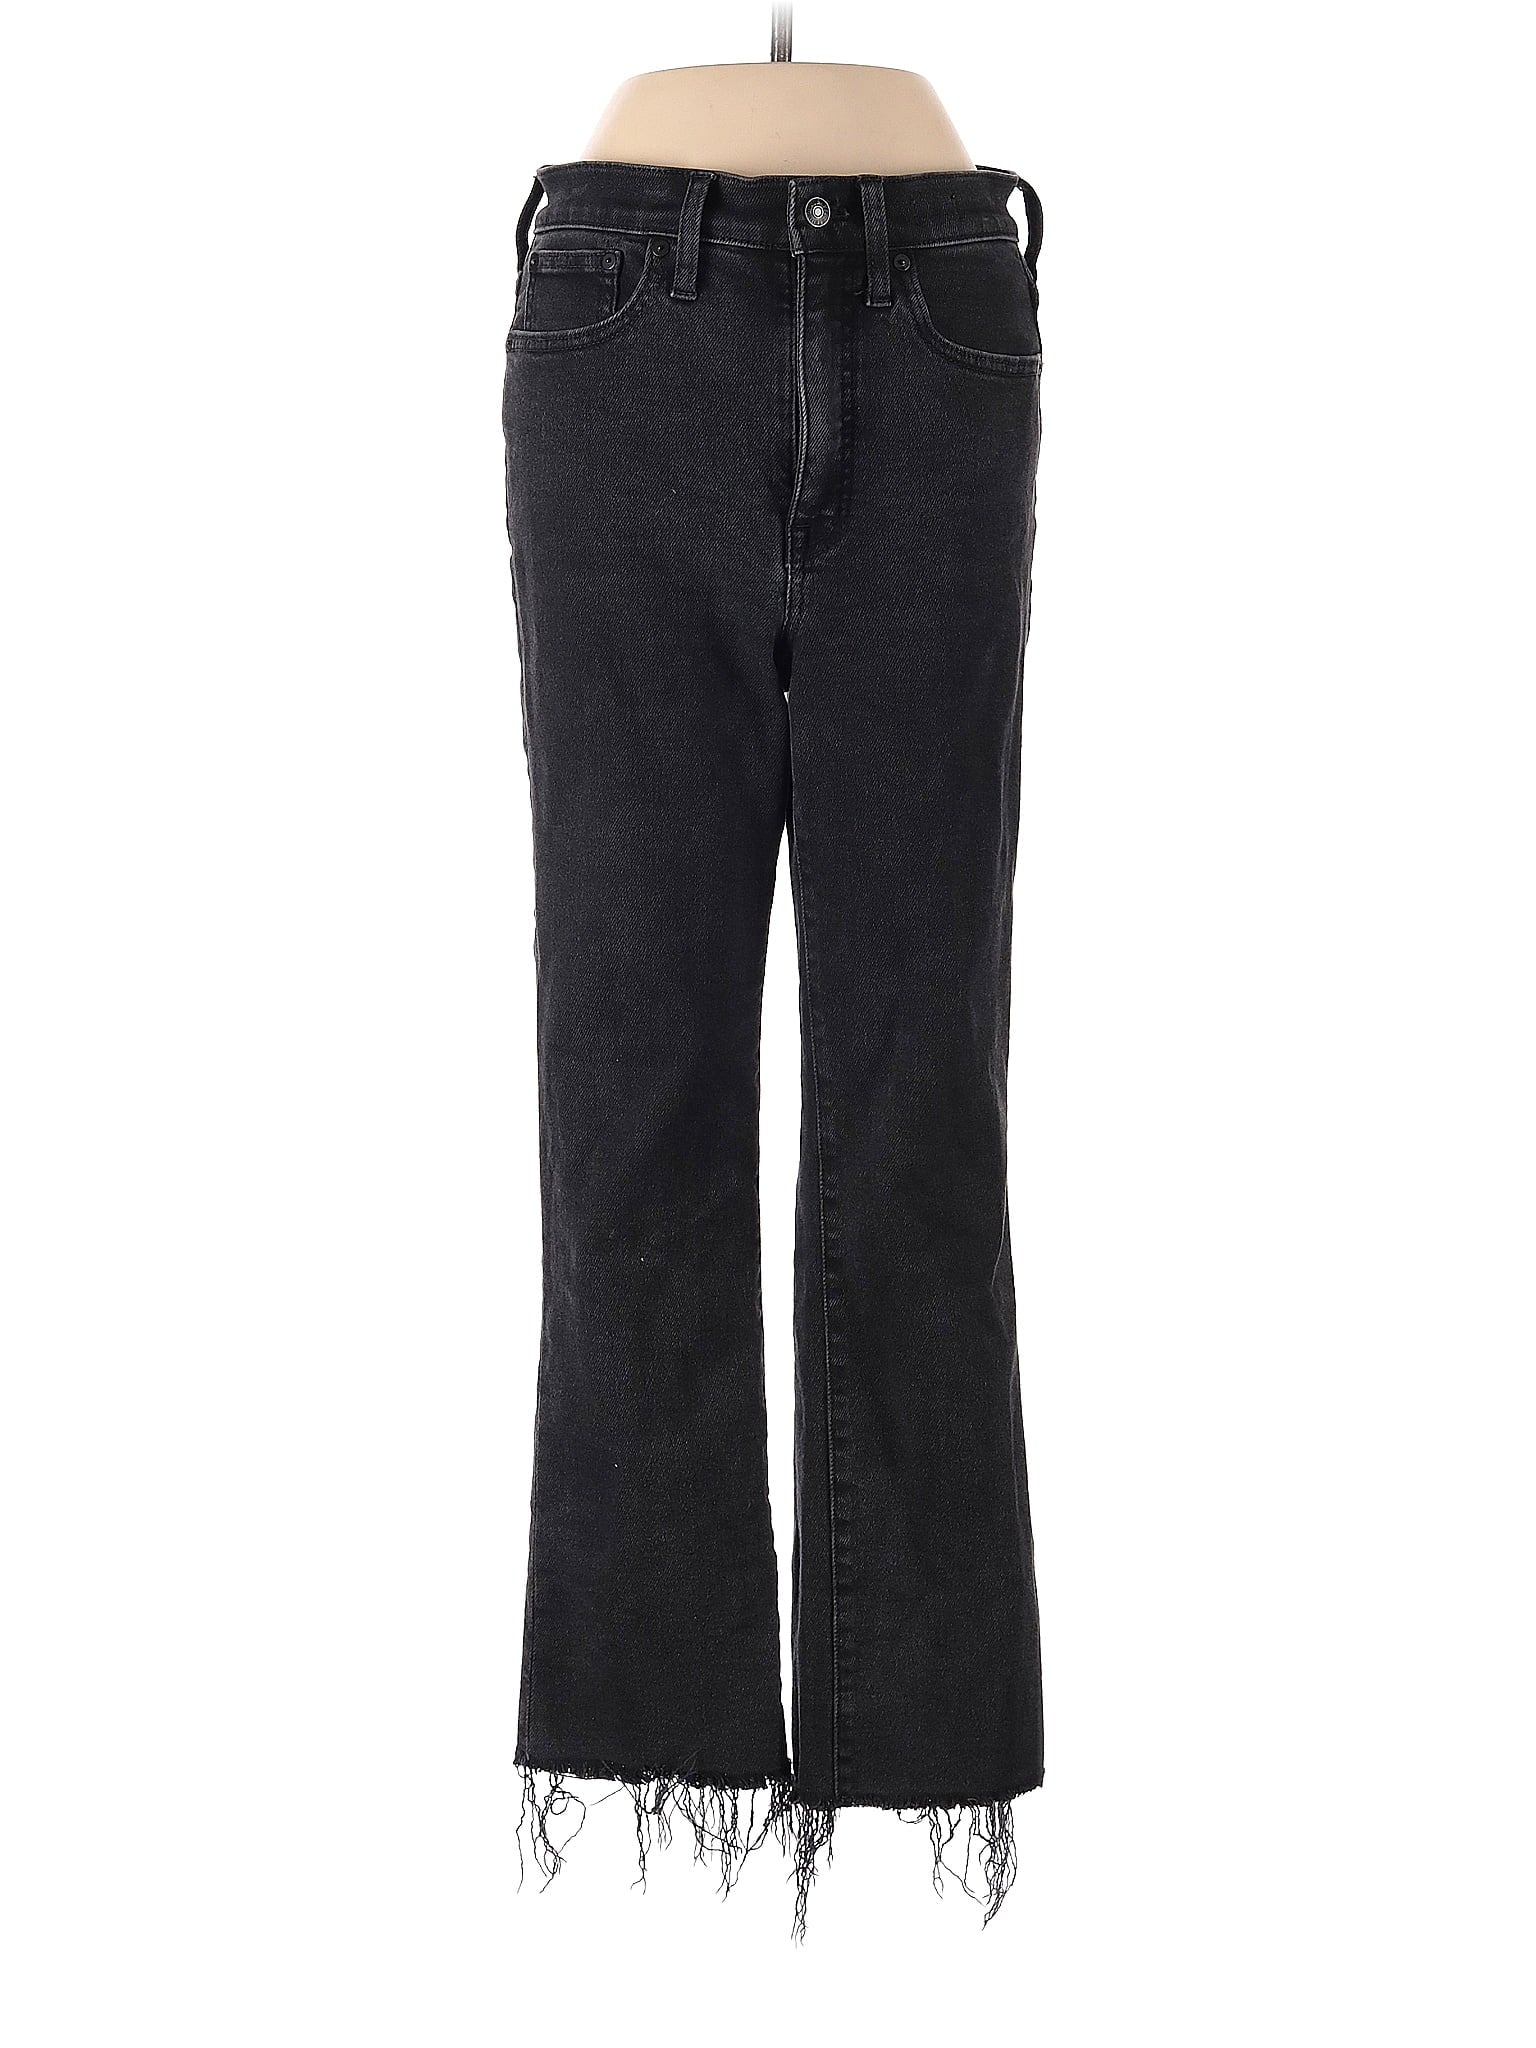 High-Rise Boyjeans Cali Demi-Boot Jeans In Bayland Wash: Raw-Hem Edition in Dark Wash waist size - 27